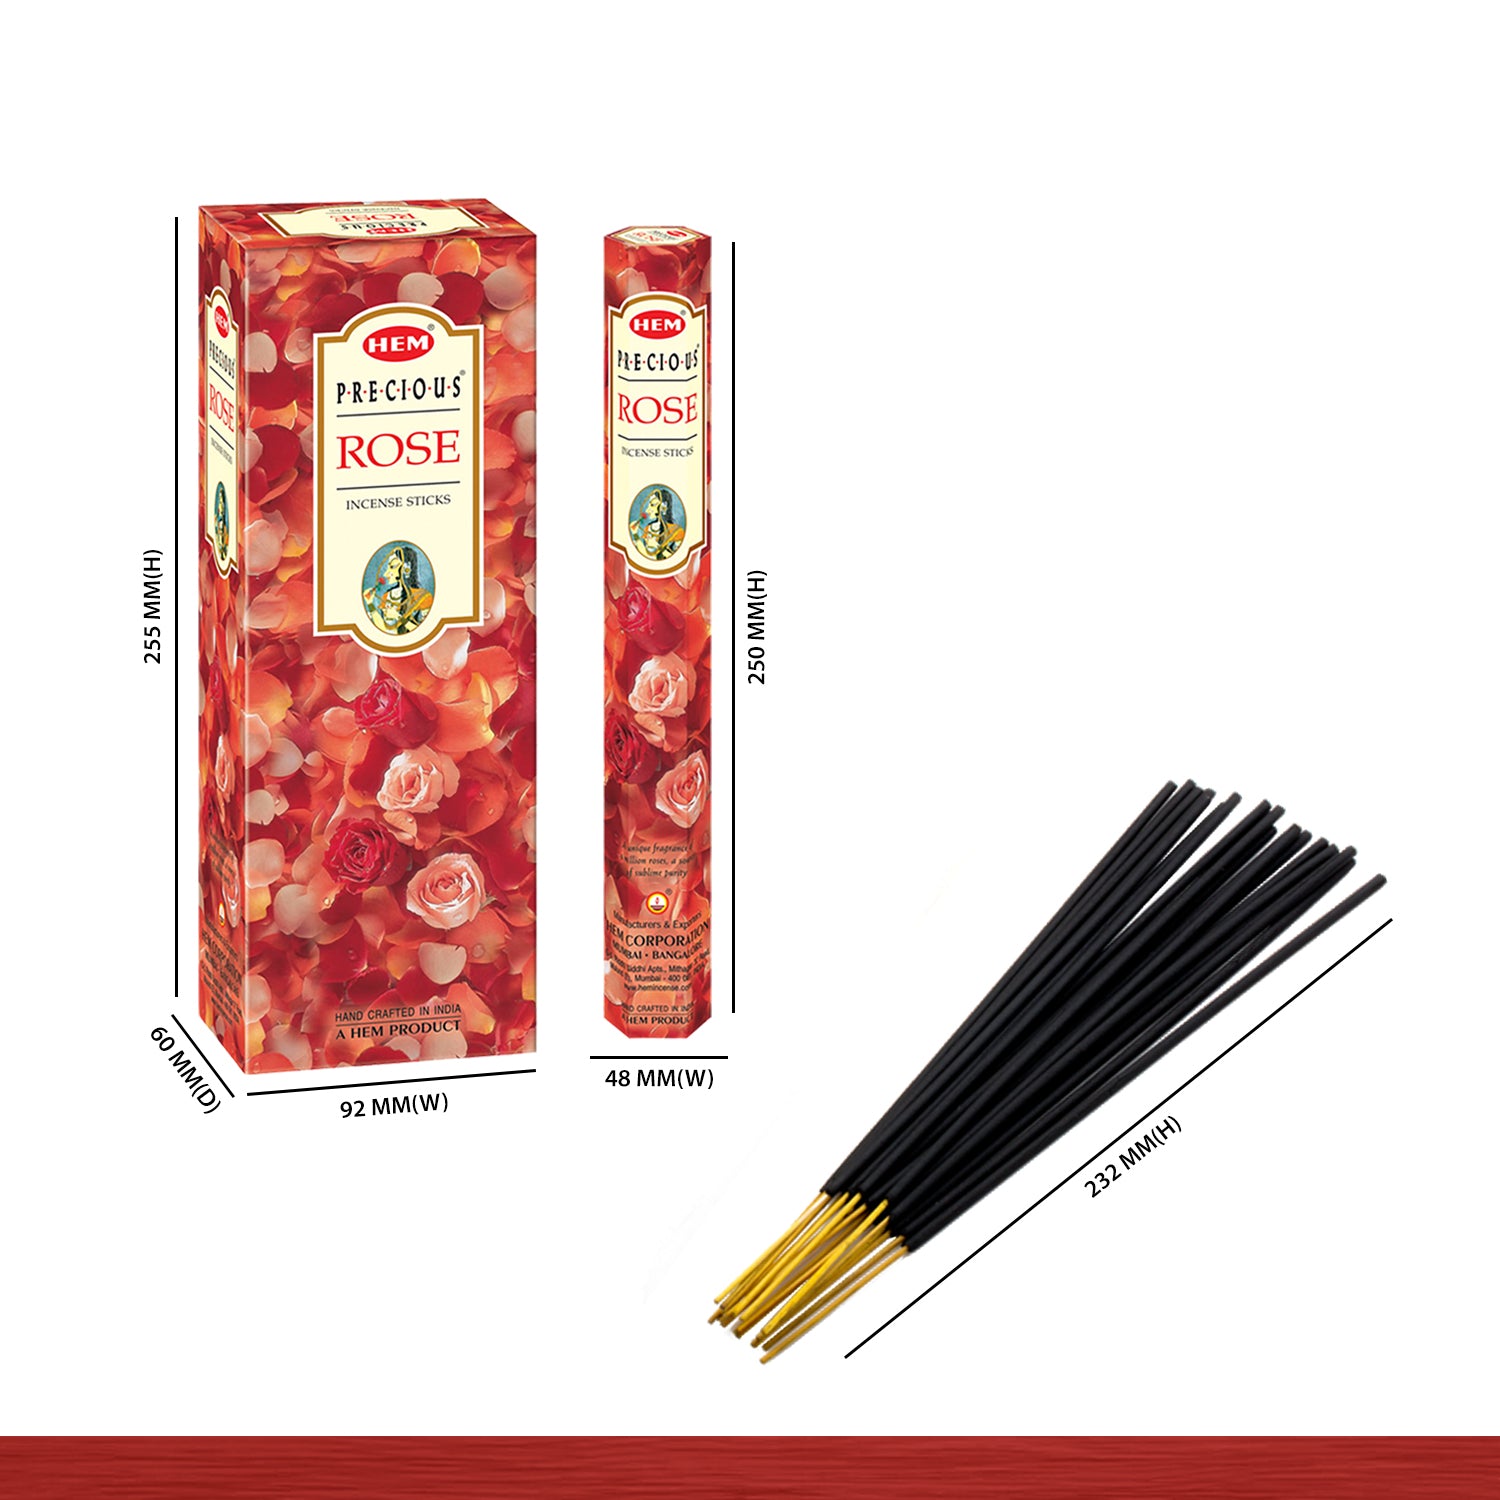 hem-precious-rose-incense-sticks-size